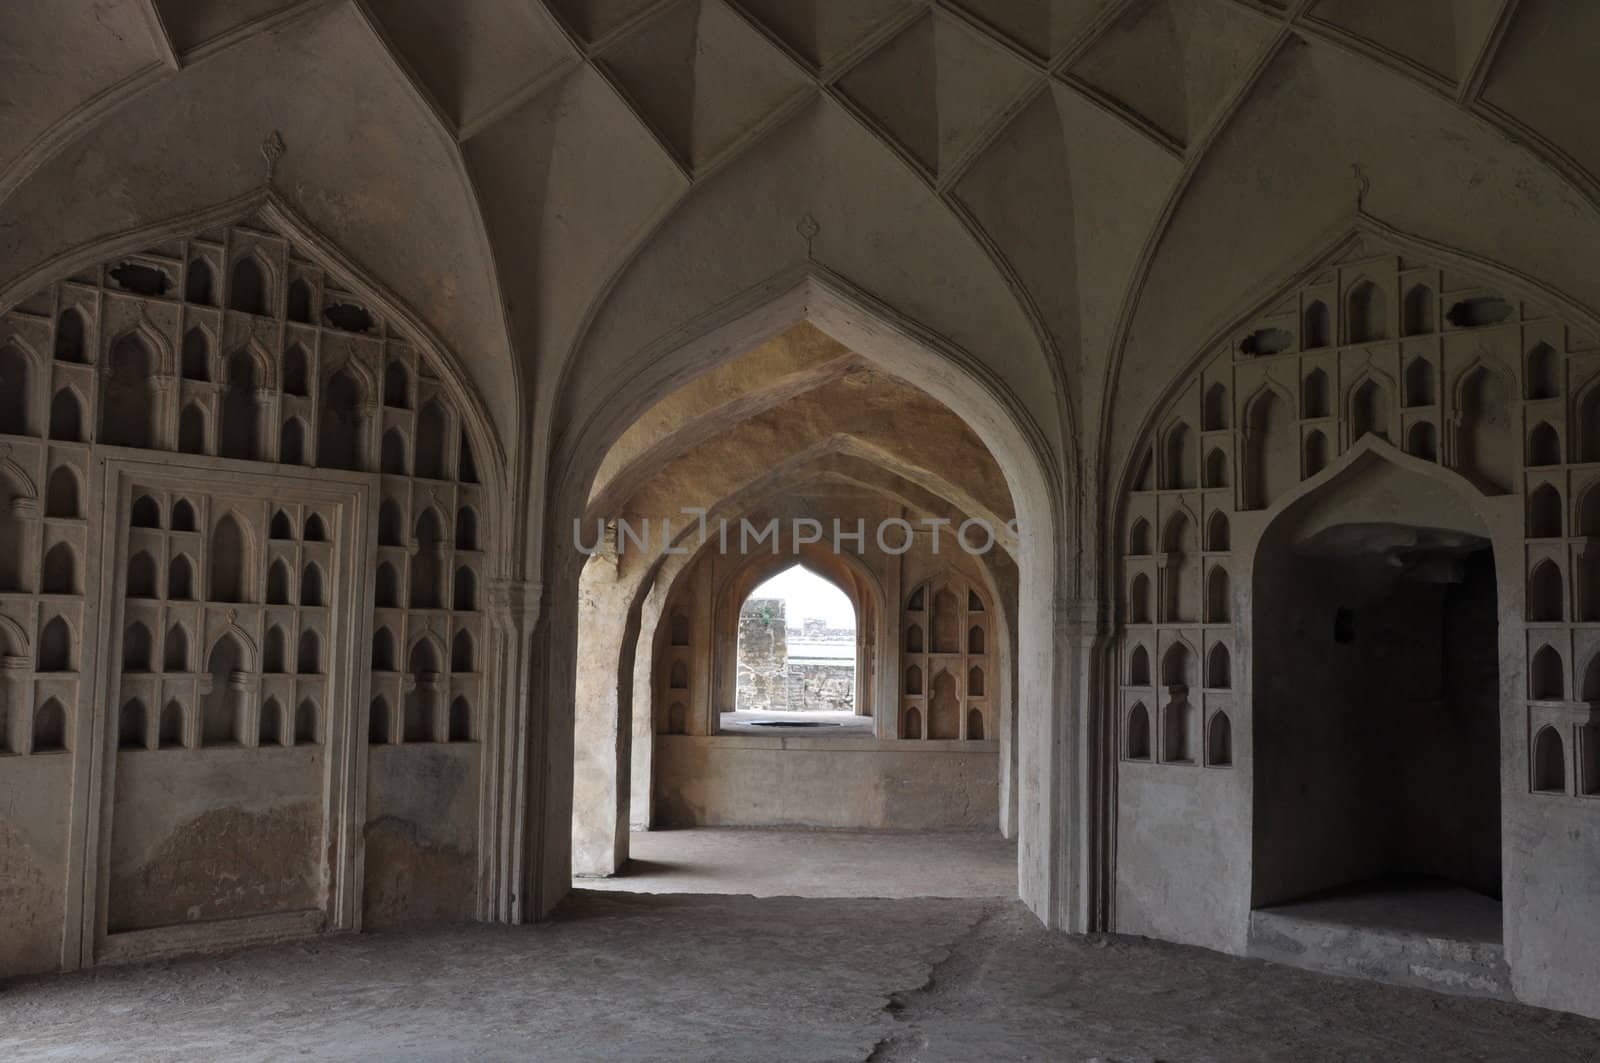 Golconda Fort in Hyderabad, India by sainaniritu